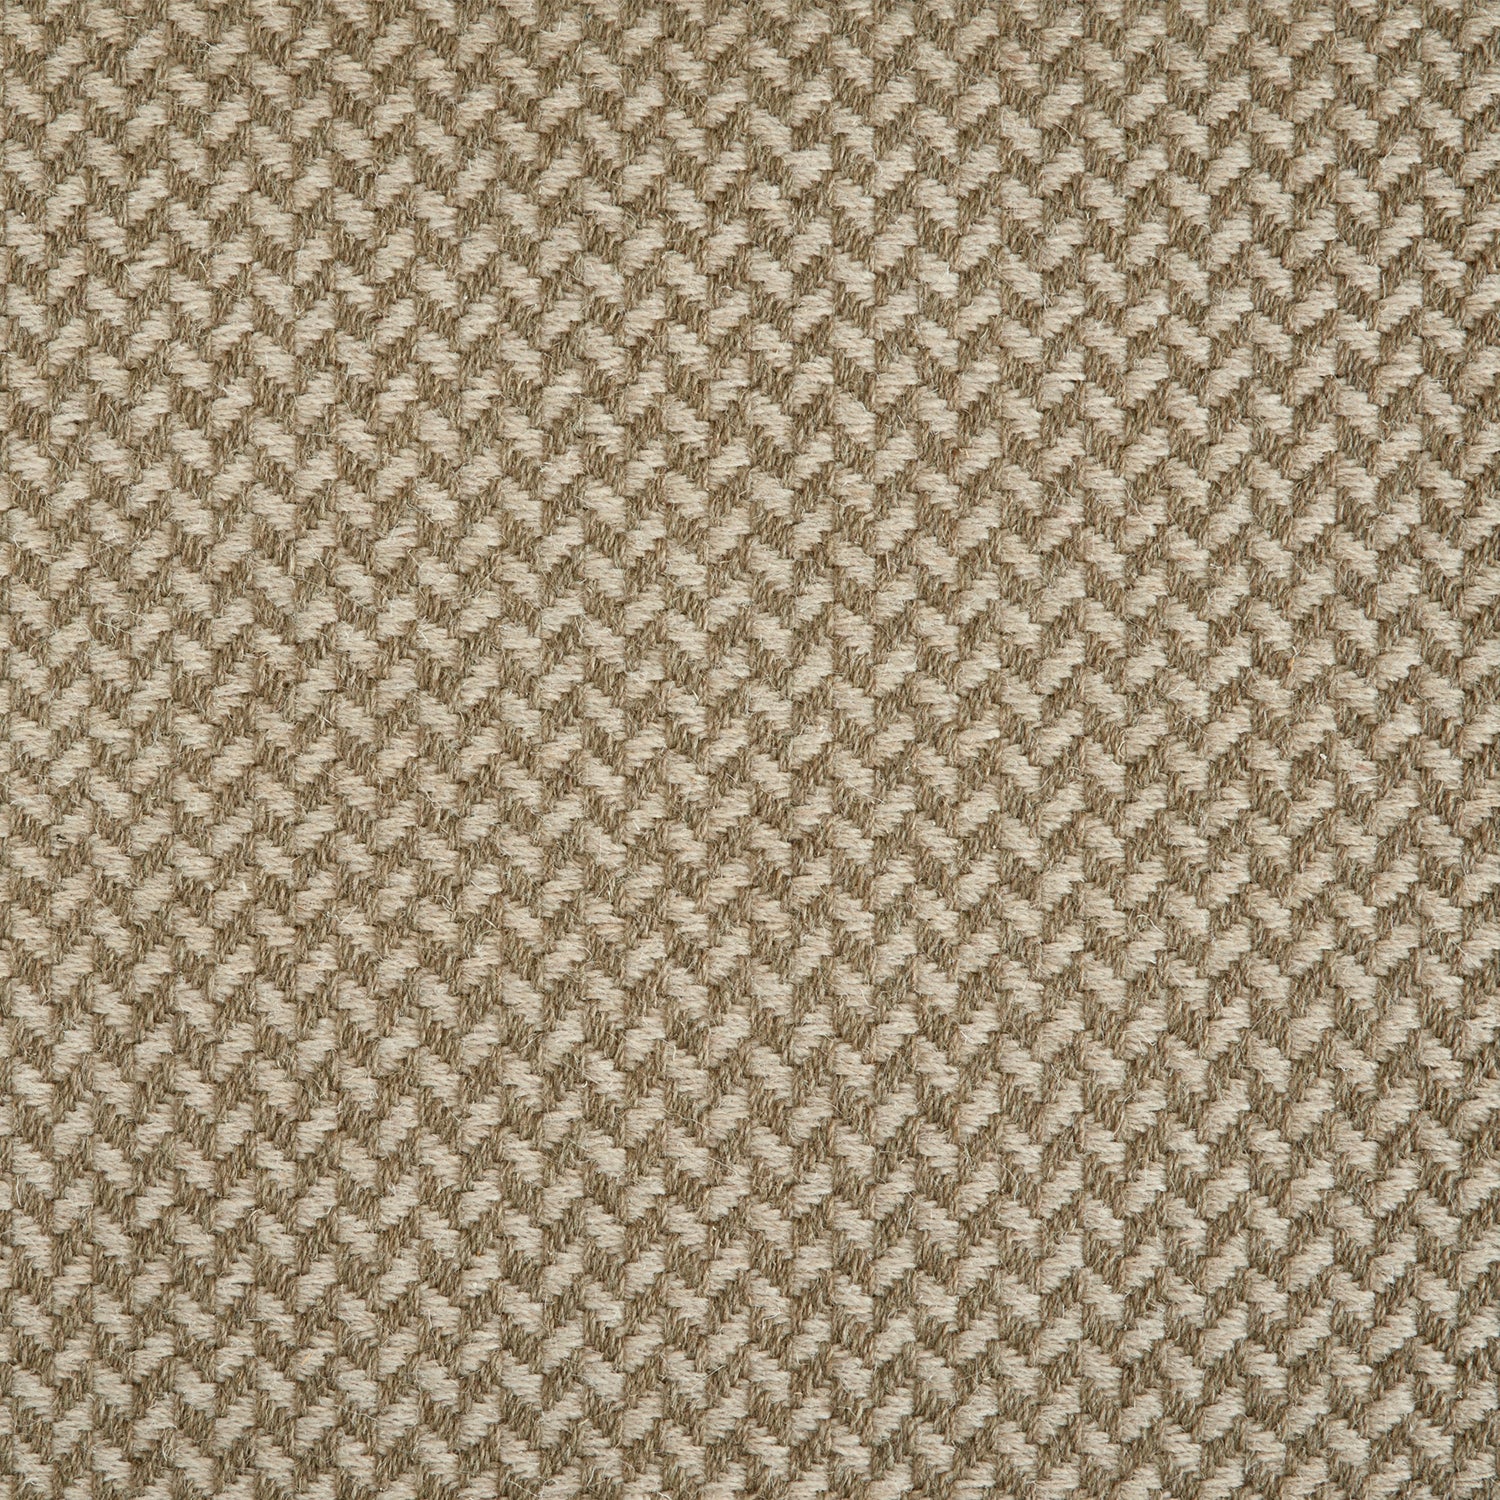 Wool broadloom carpet swatch in a herringbone pattern in shades of alternating tan and brown.